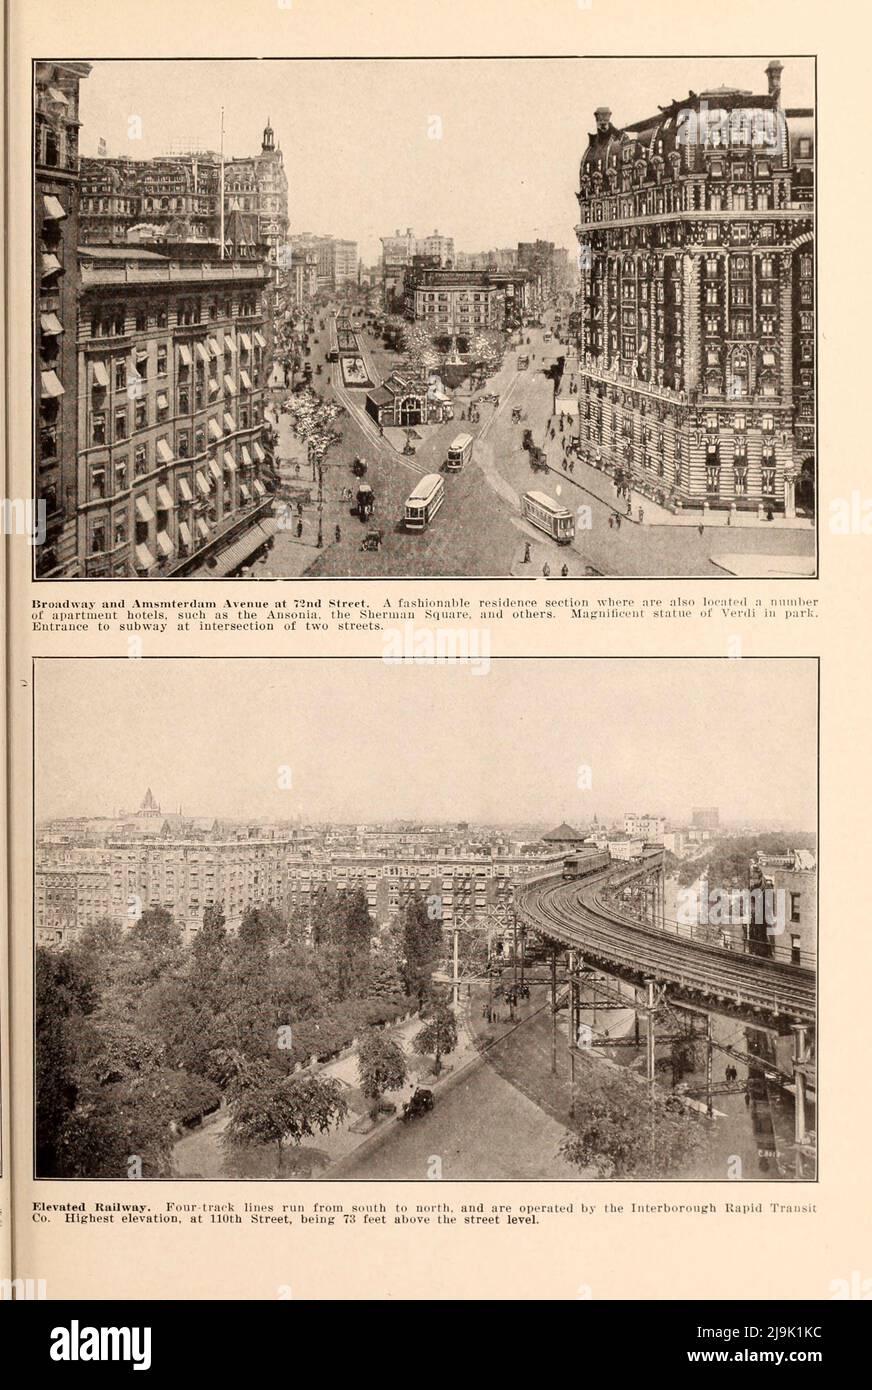 Broadway und Amsterdam Avenue an der 72. Street; erhöhte Eisenbahn aus dem Buch ' New York Illustrated ' Erscheinungsdatum 1916 Verlag New York : Success Postal Card Co. Stockfoto